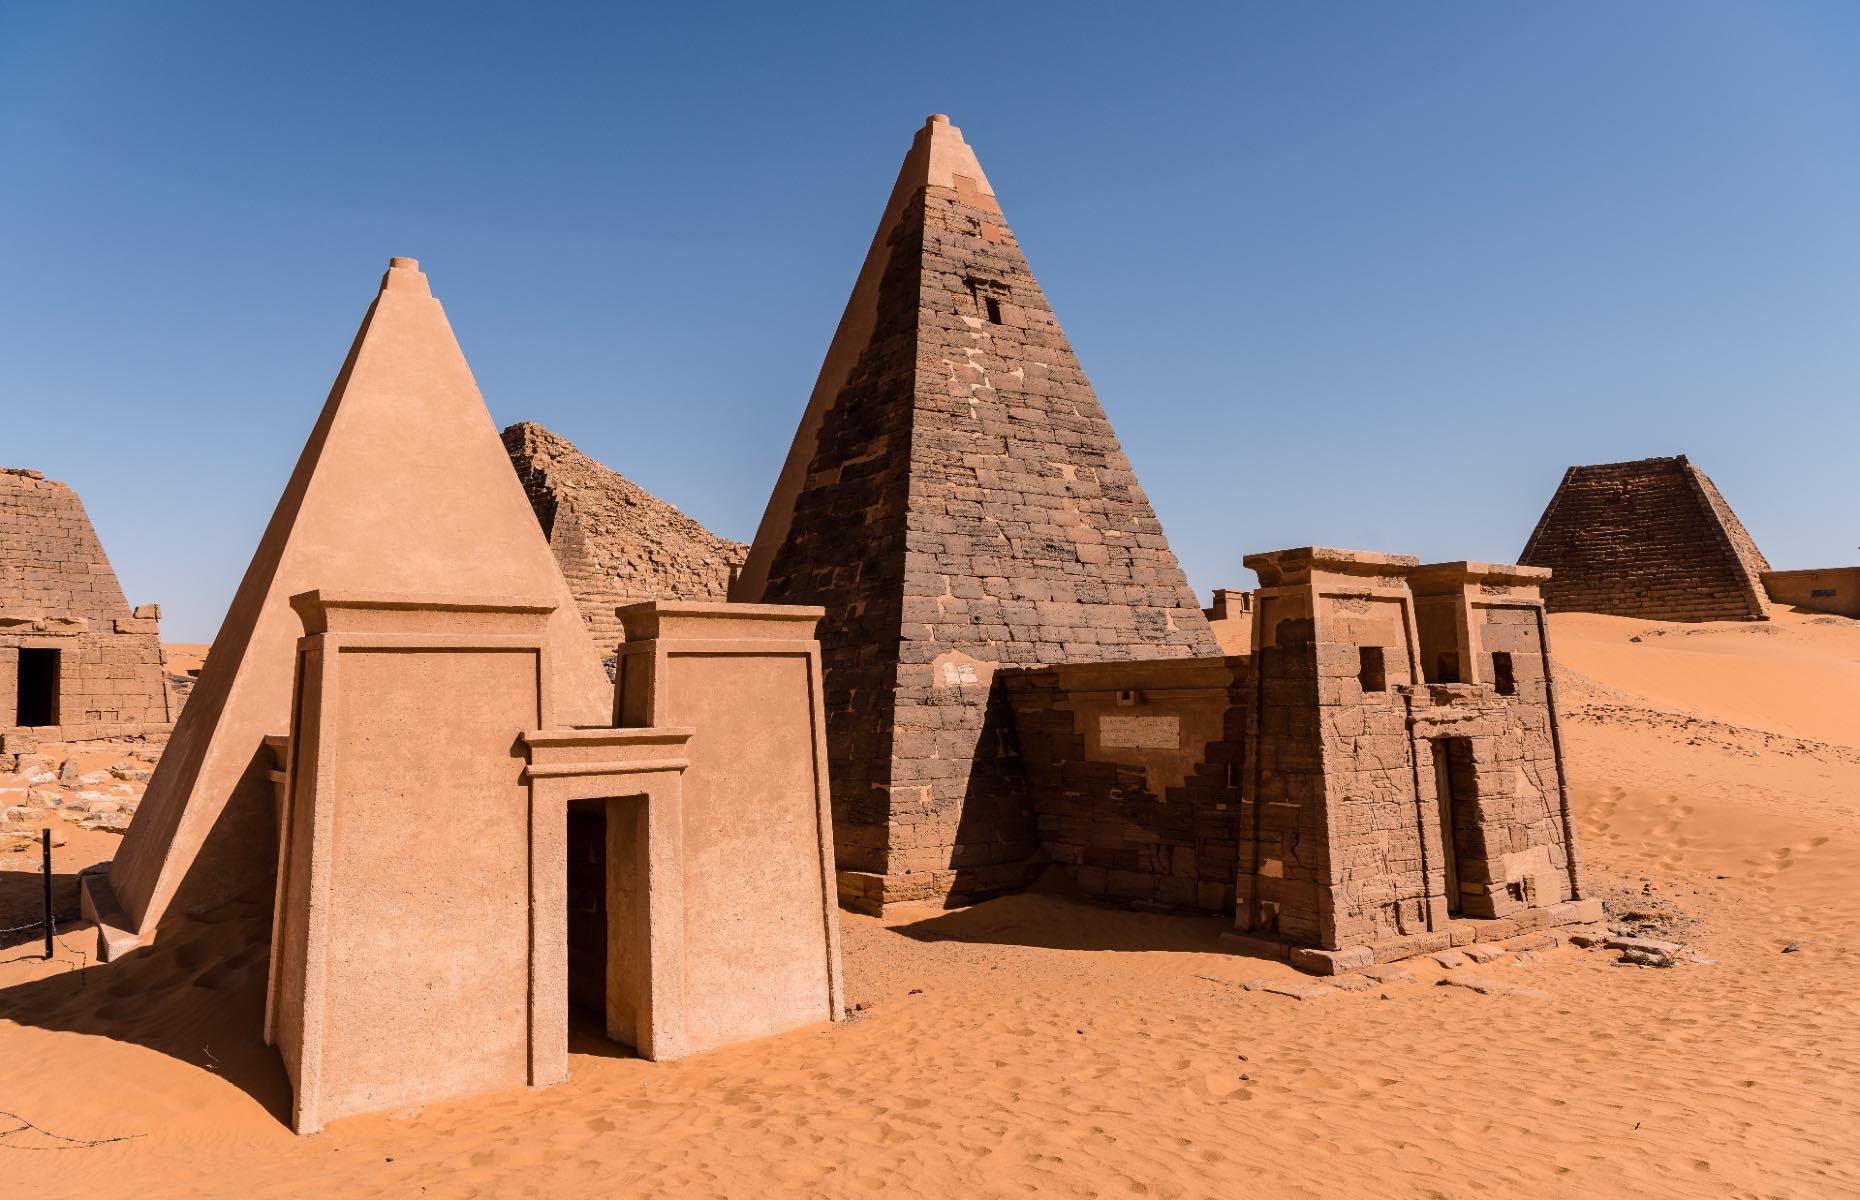 Географическое положение цивилизации мероэ. Пирамиды Мероэ Судан. Нубийские пирамиды Мероэ. Нубийские пирамиды в Судане. Пирамиды в Южном Судане.